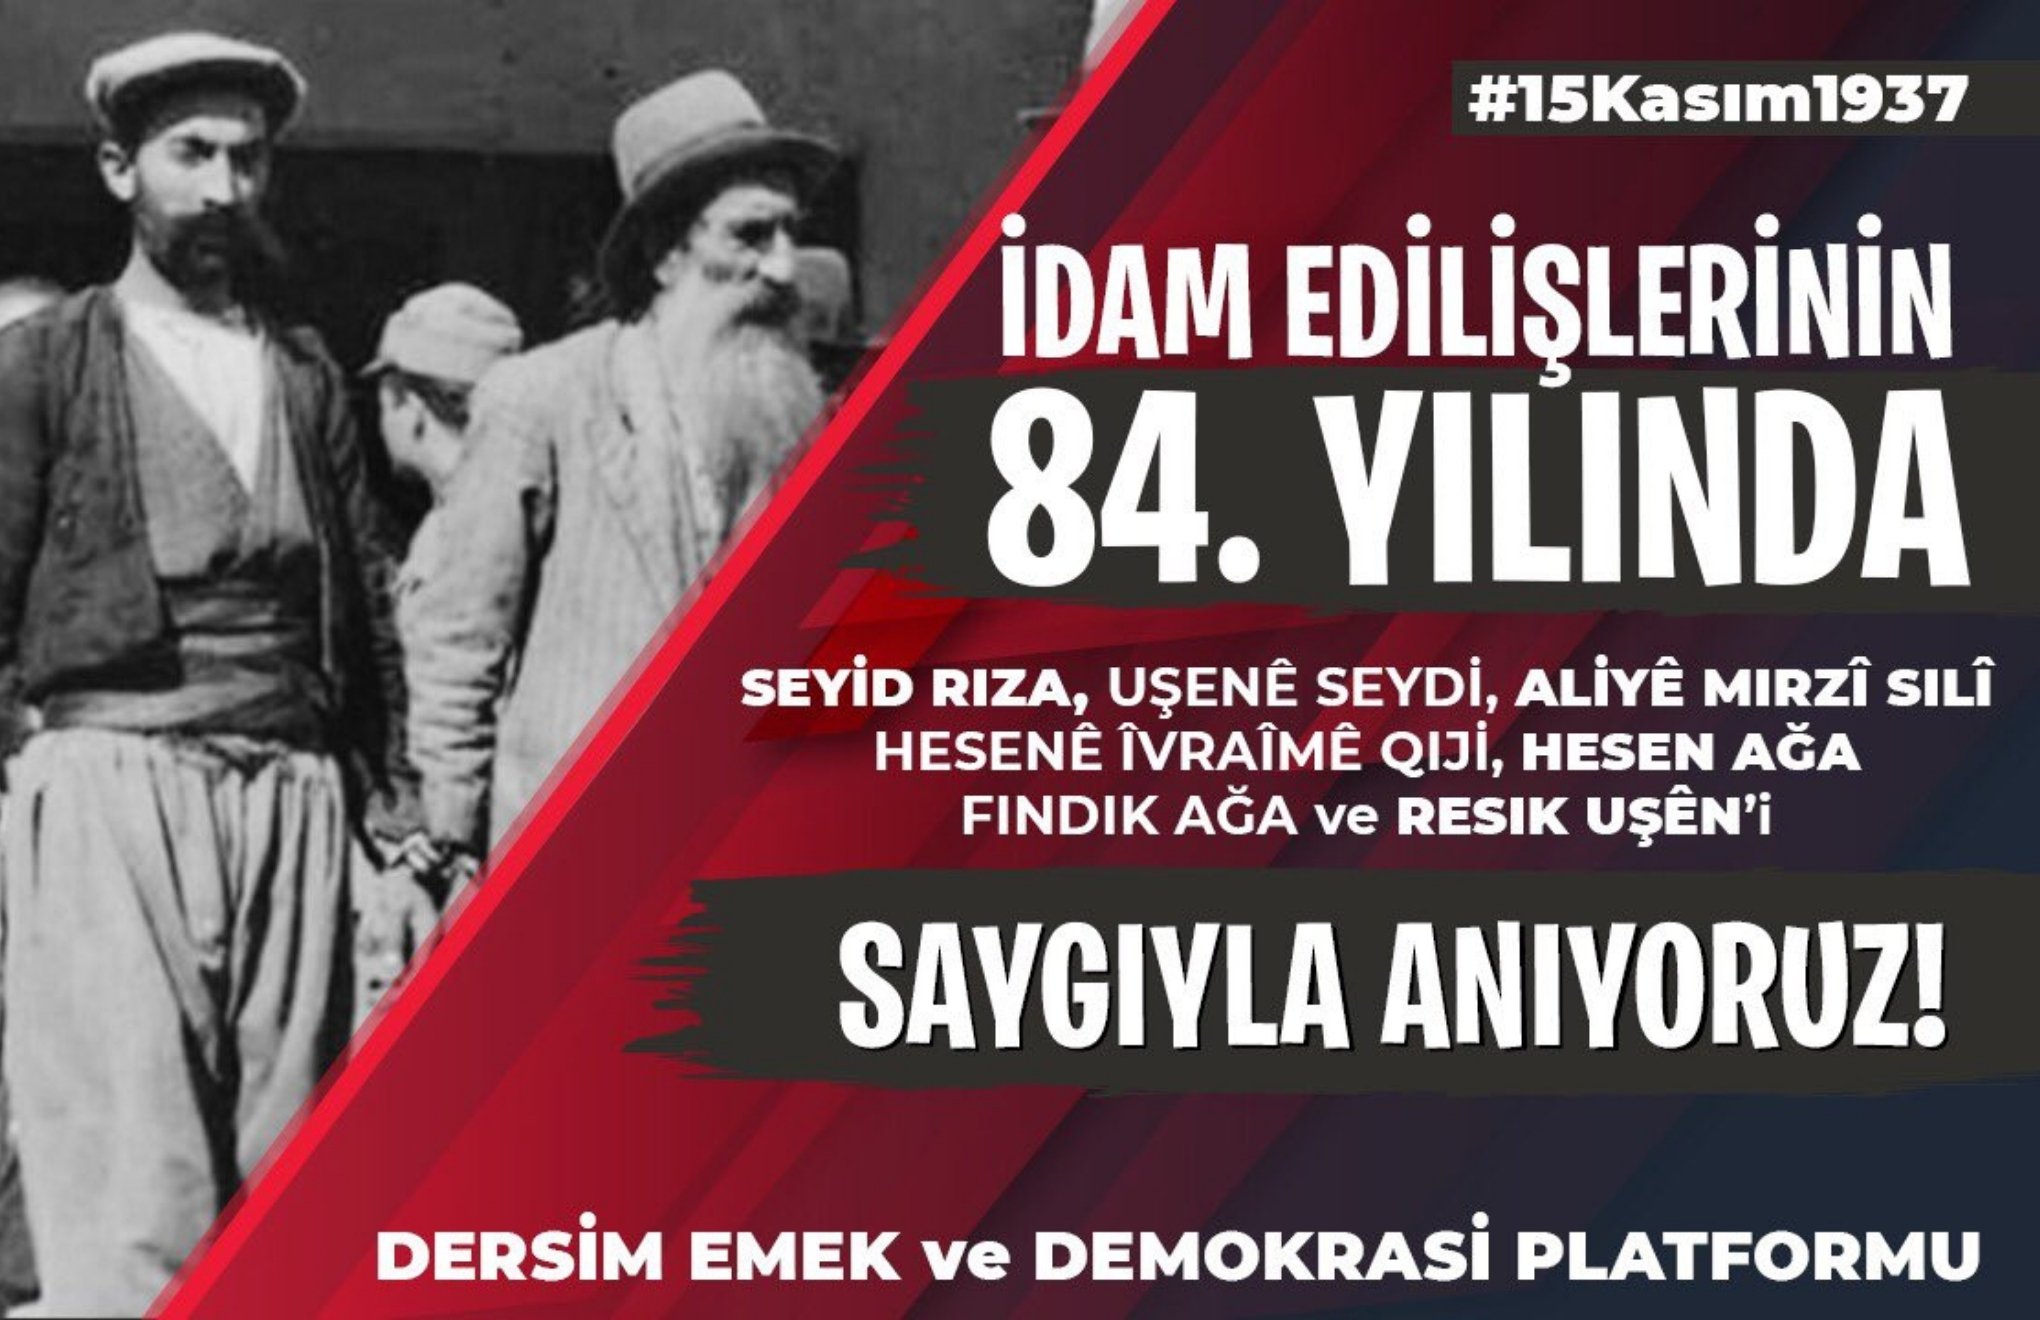 Investigation into Seyit Rıza commemoration in Dersim